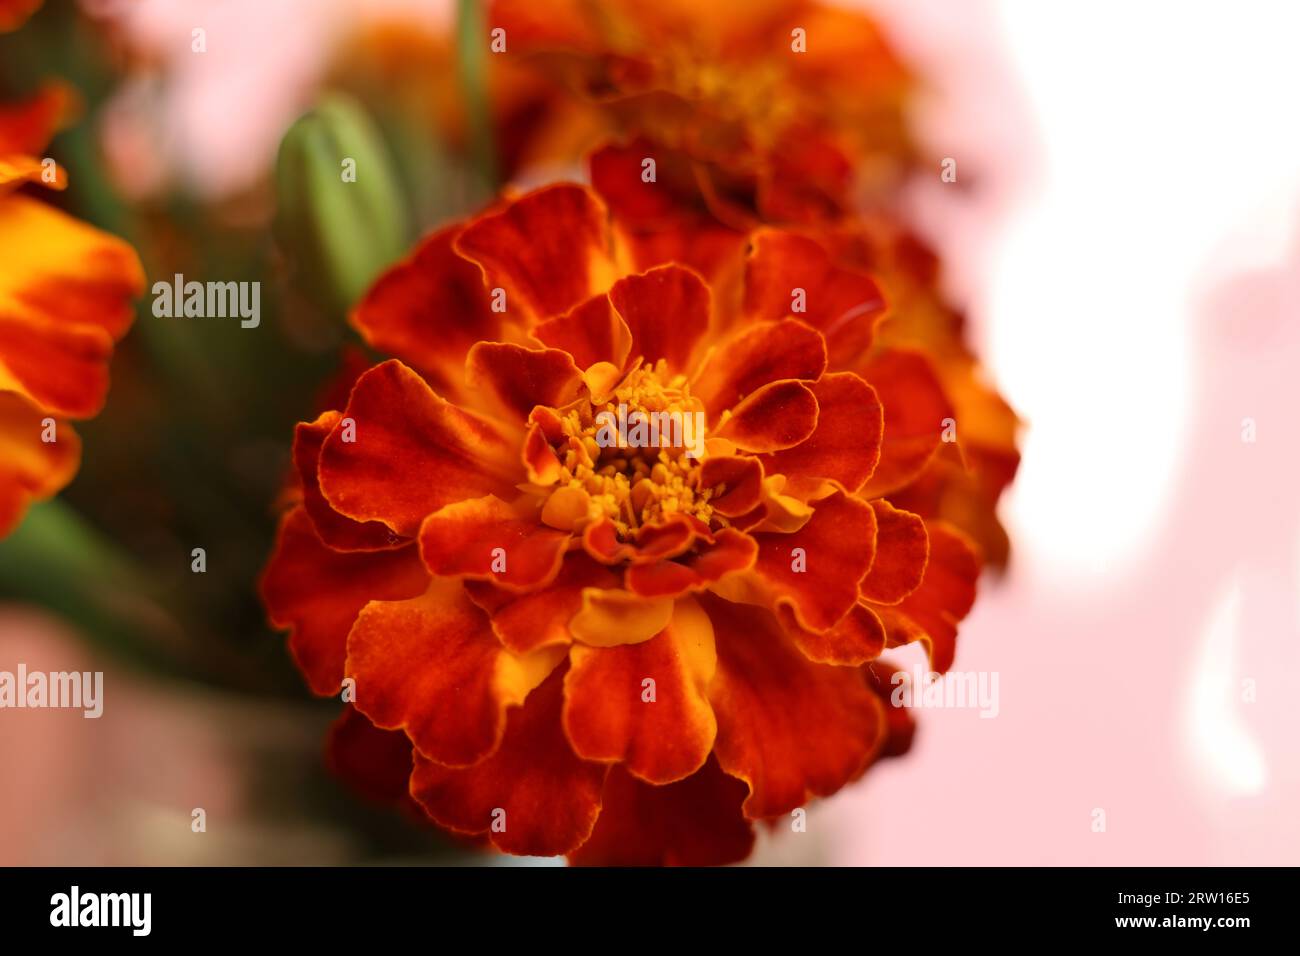 Mise au point sélective rouge vif et orange Tagetes patula, les fleurs de souci français Banque D'Images